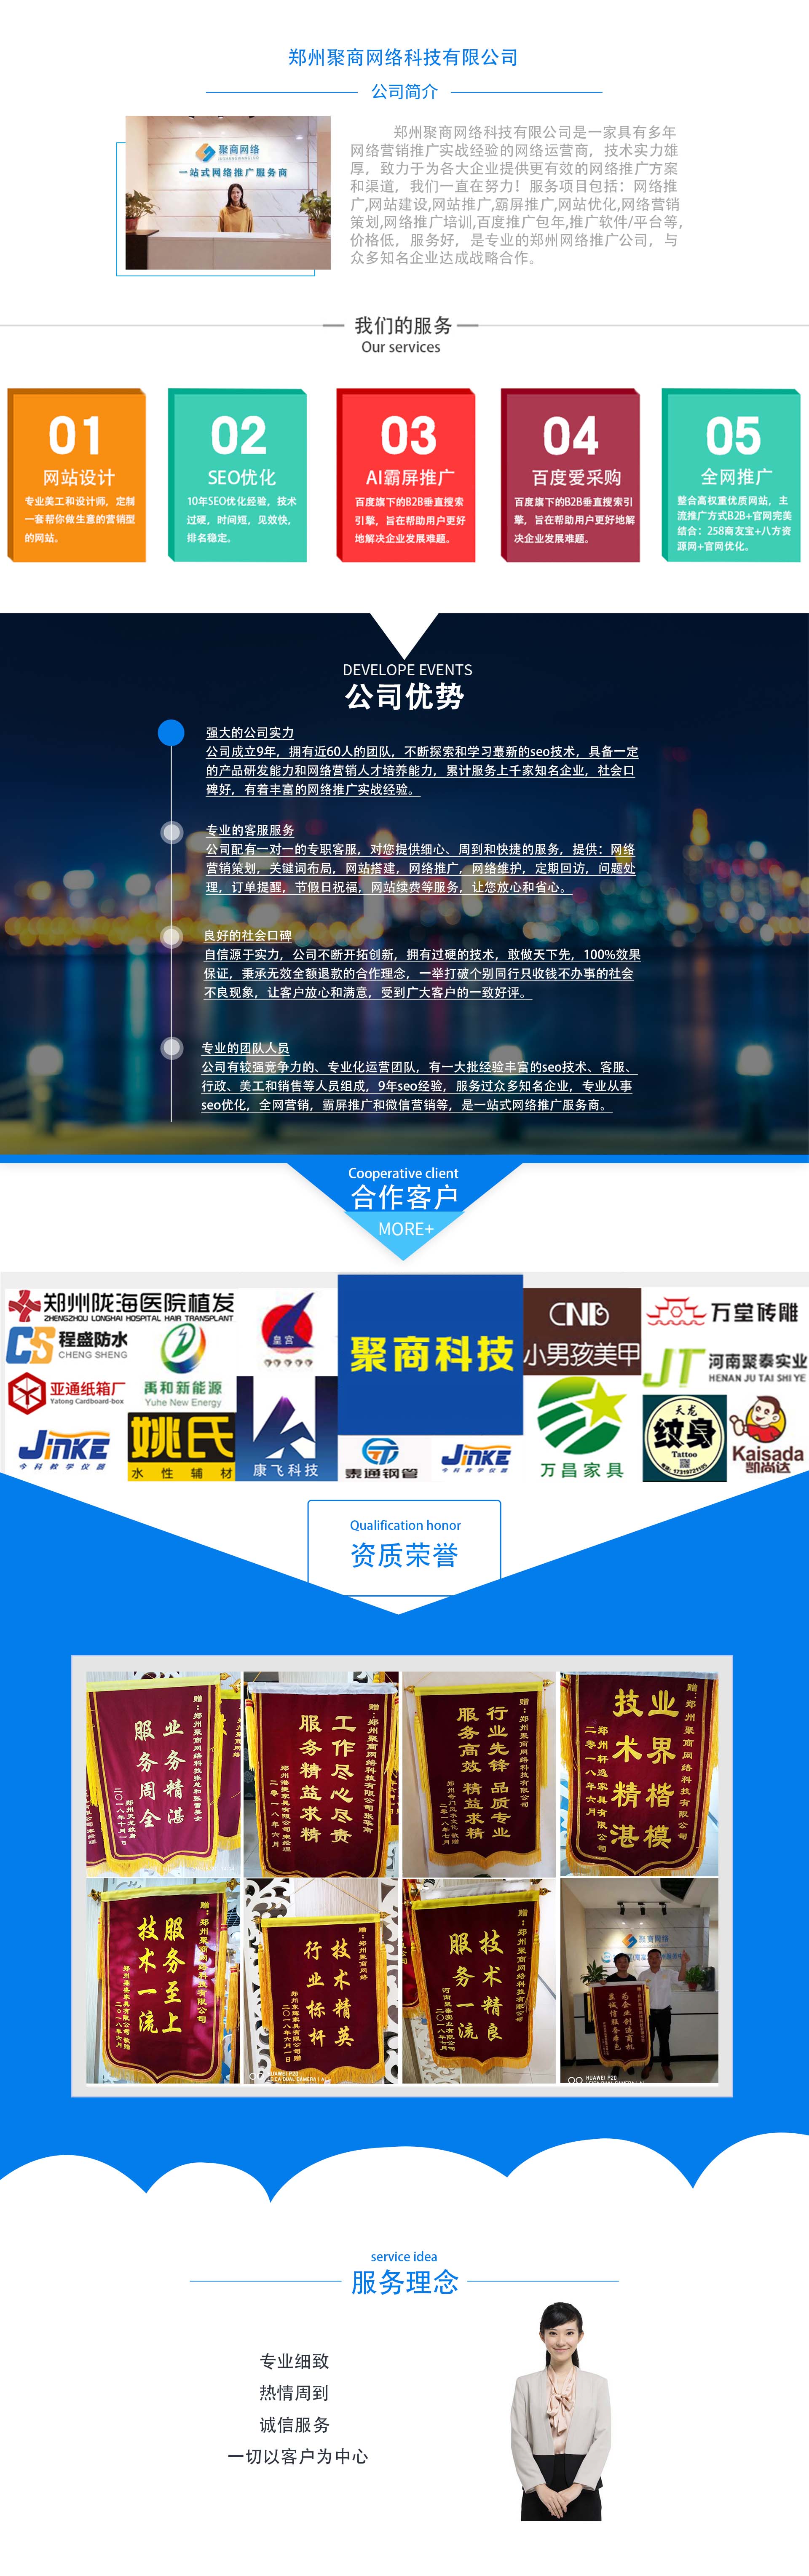 鄭州企業網絡推廣外包公司